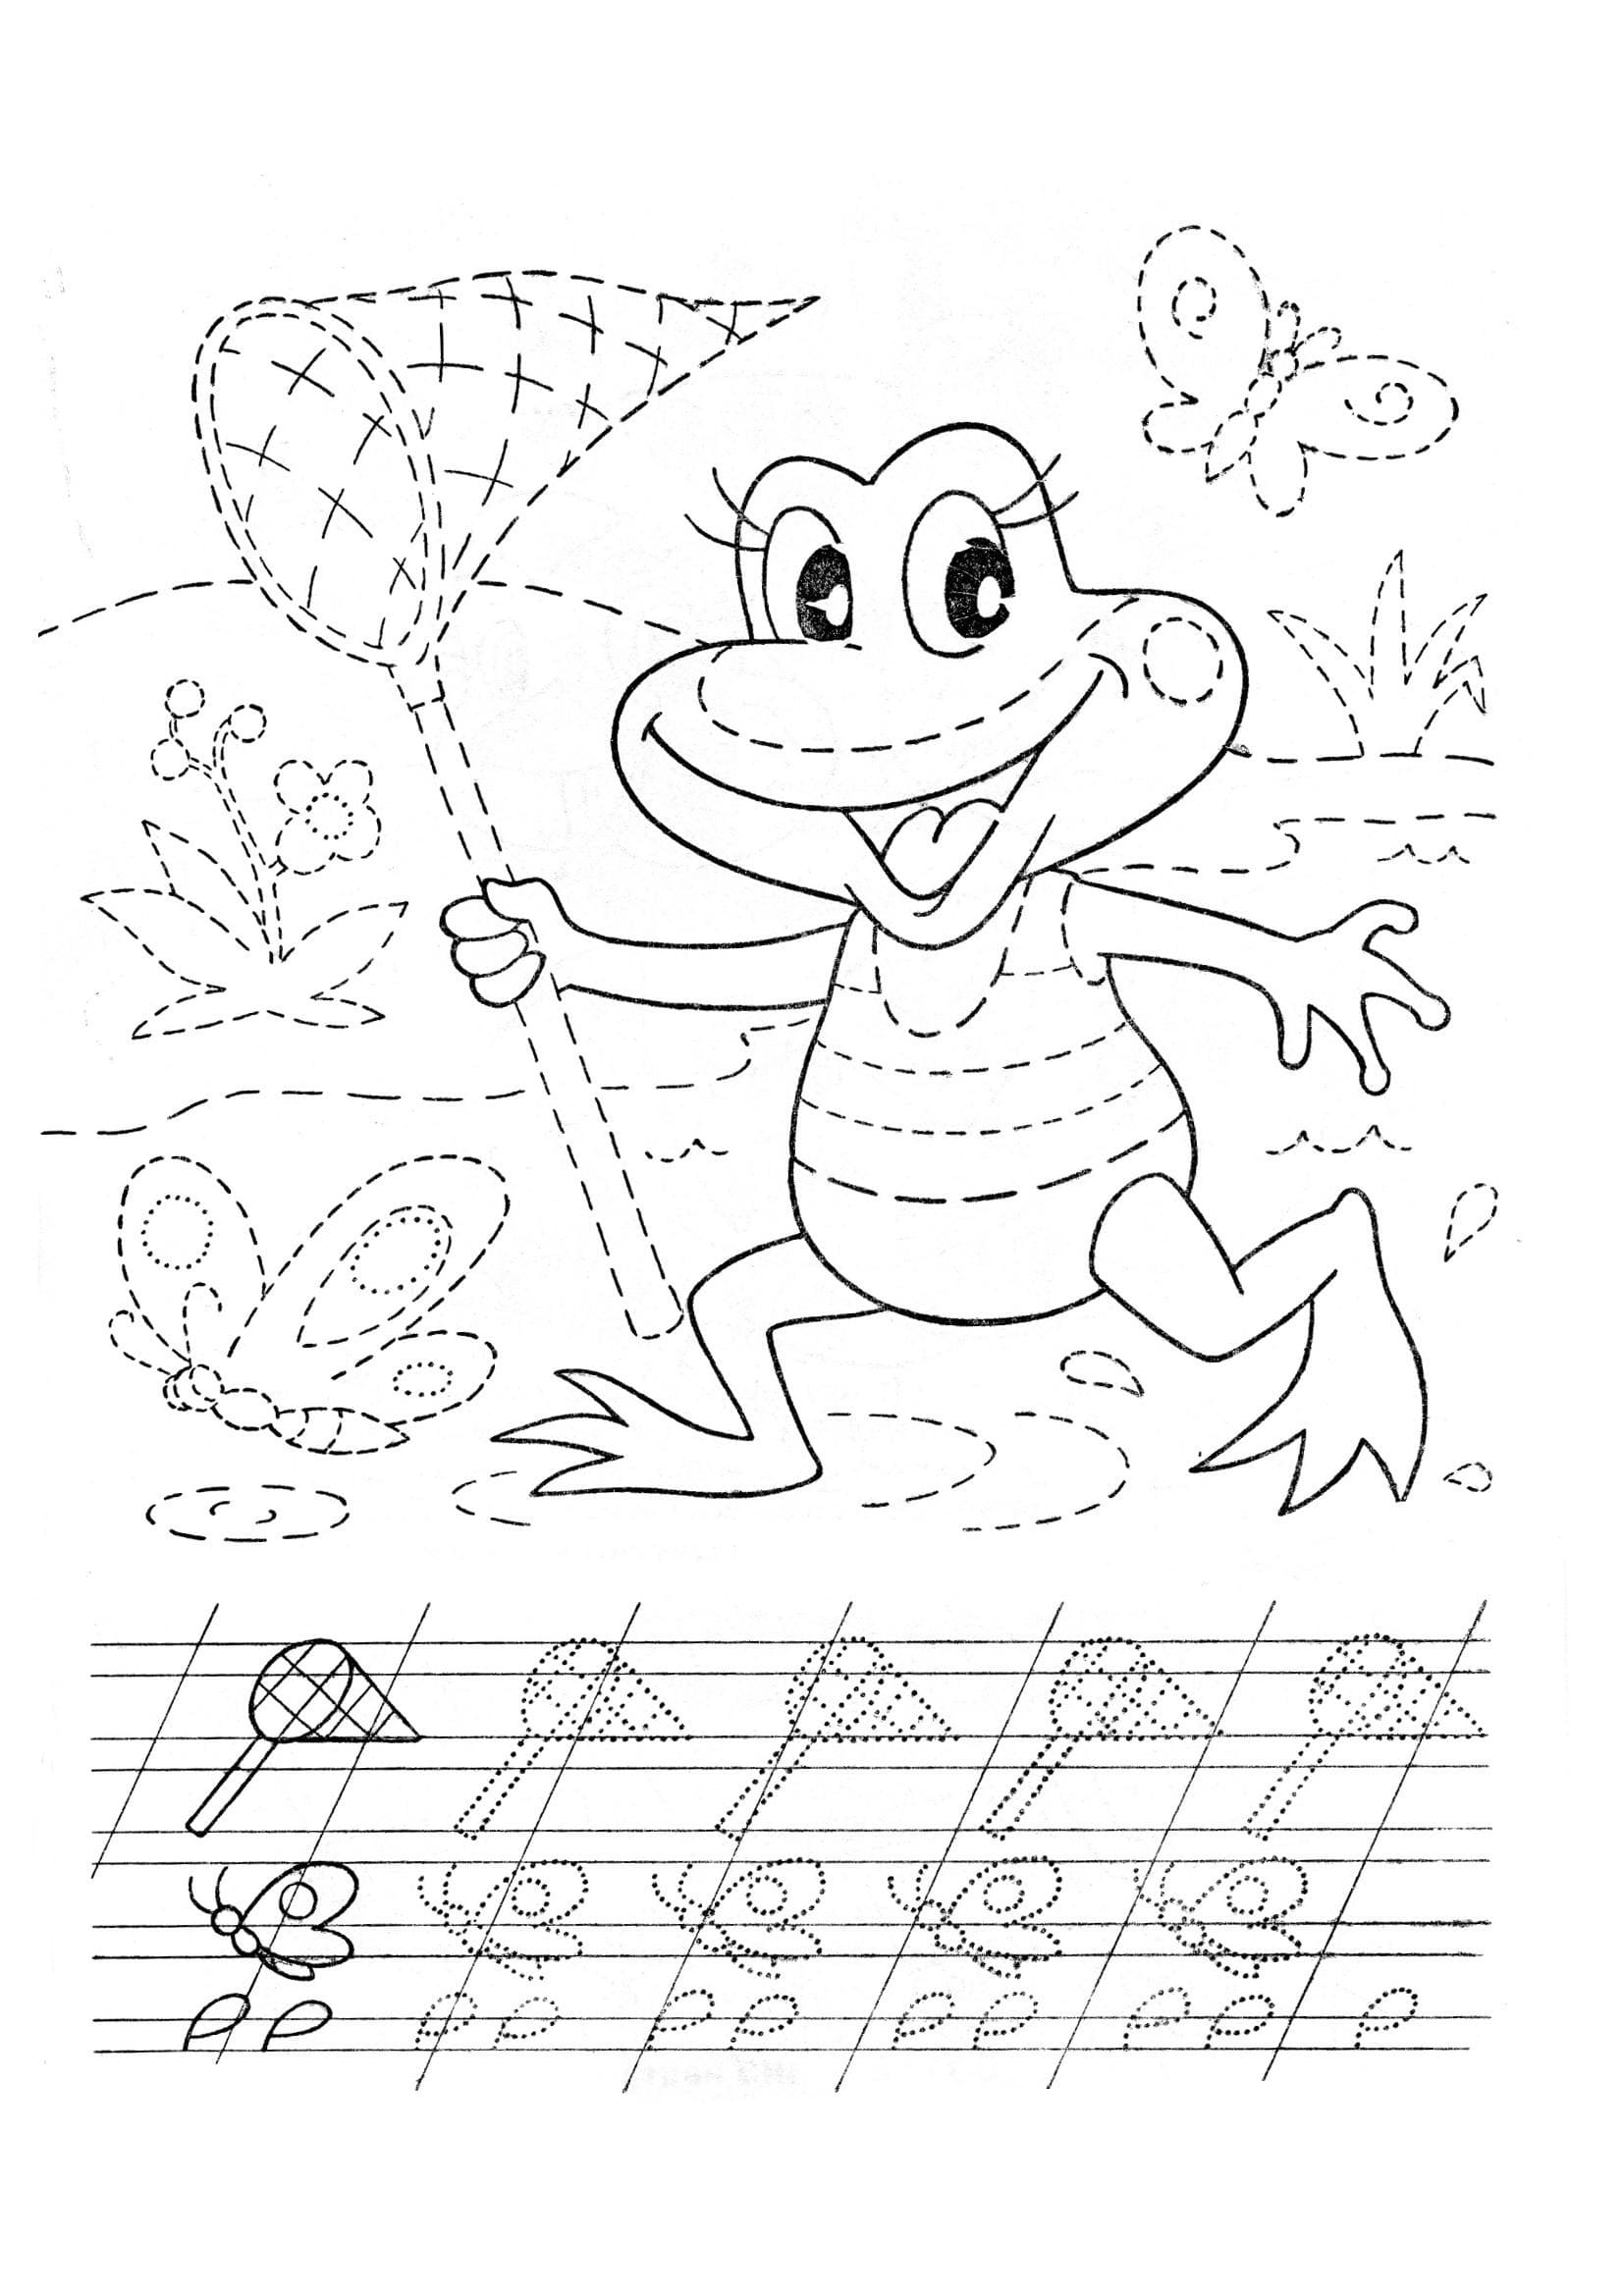 Copybook frog